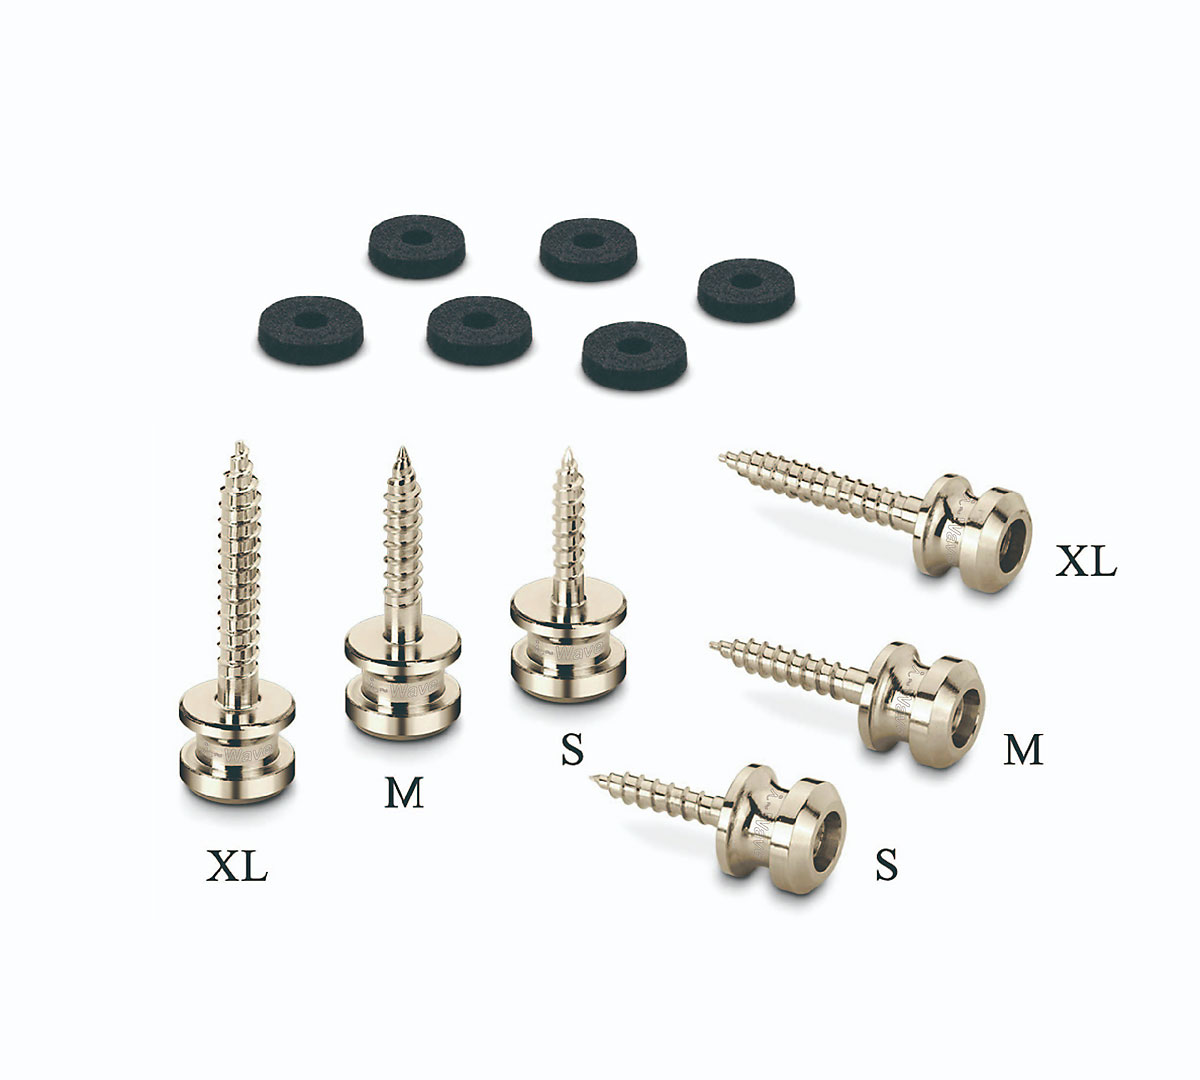  S-Locks Strap Pin XL SP